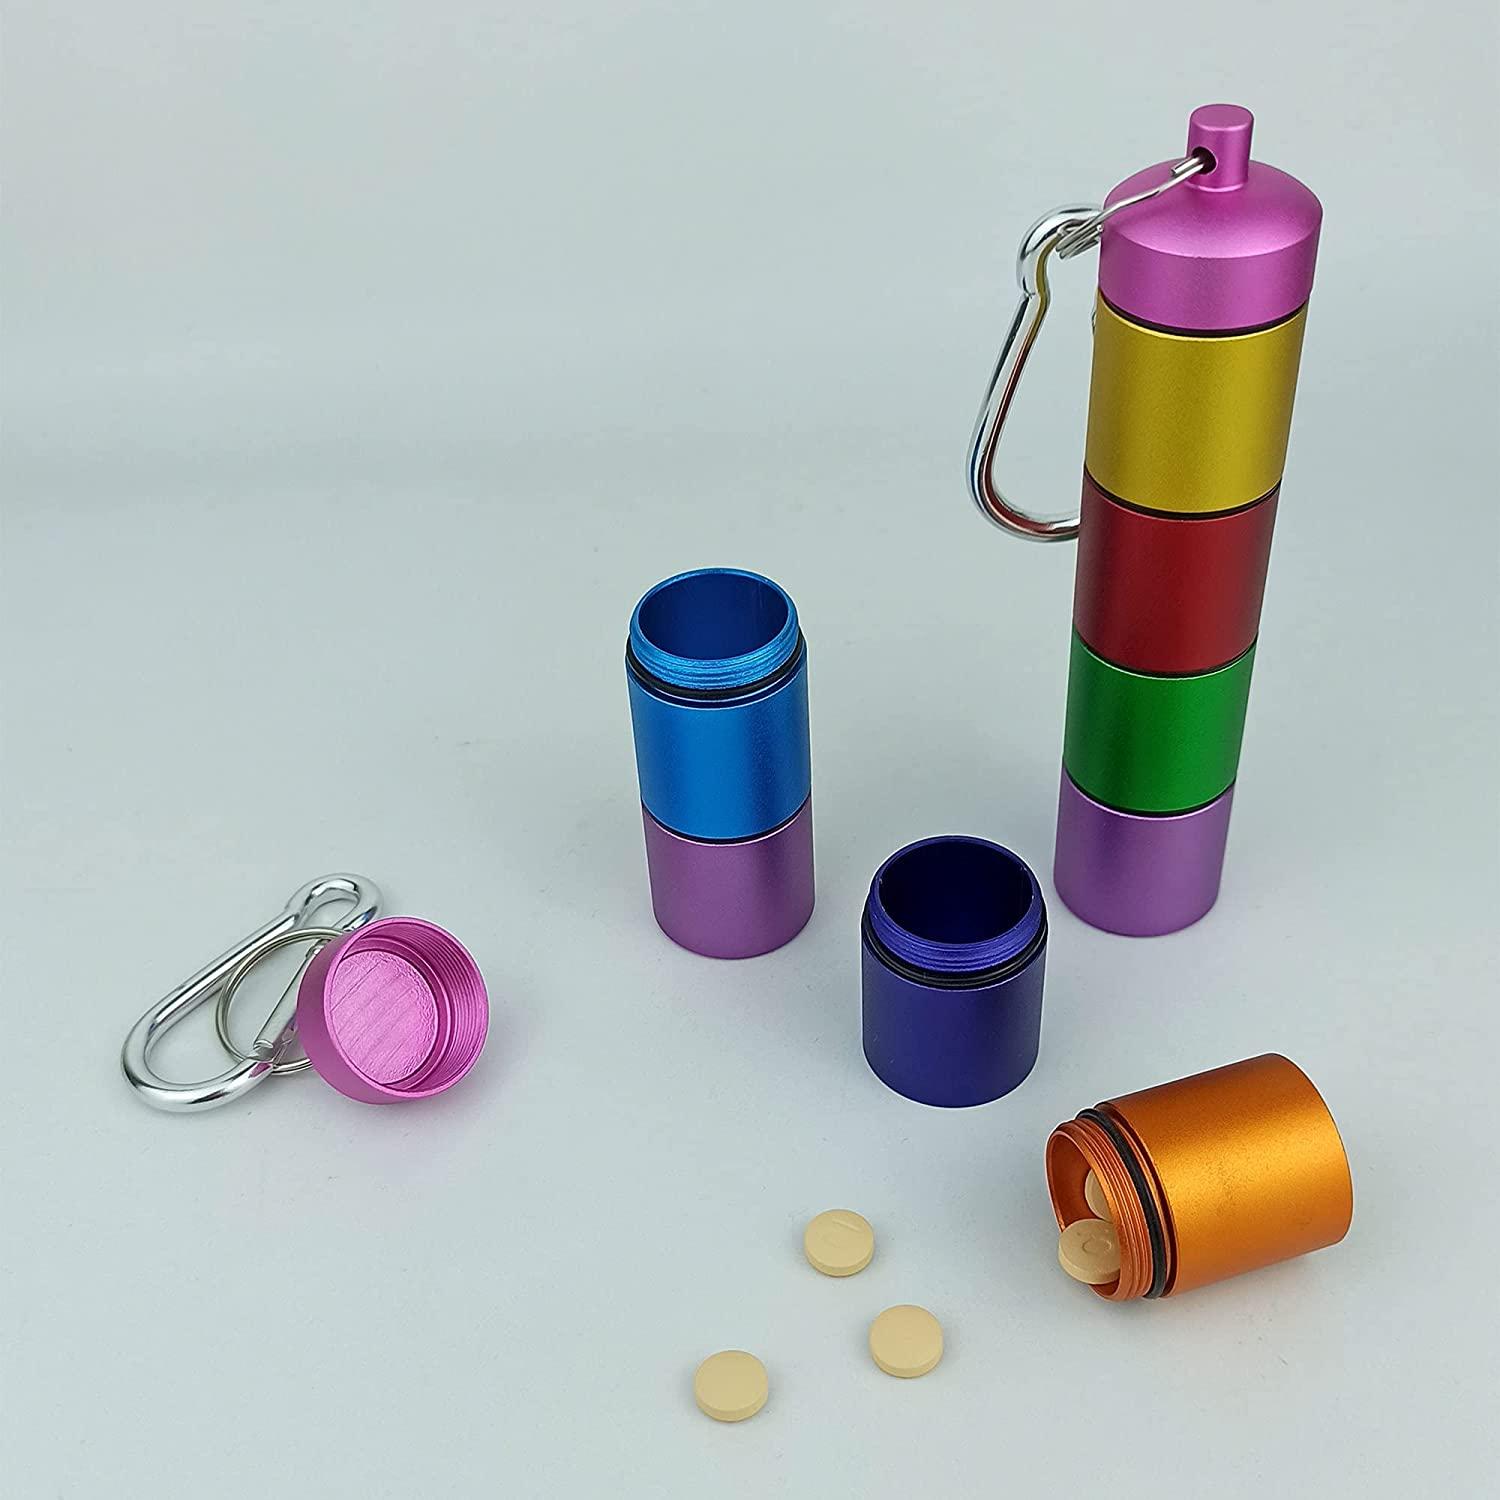 Handmade pill bottle organizer box - open view